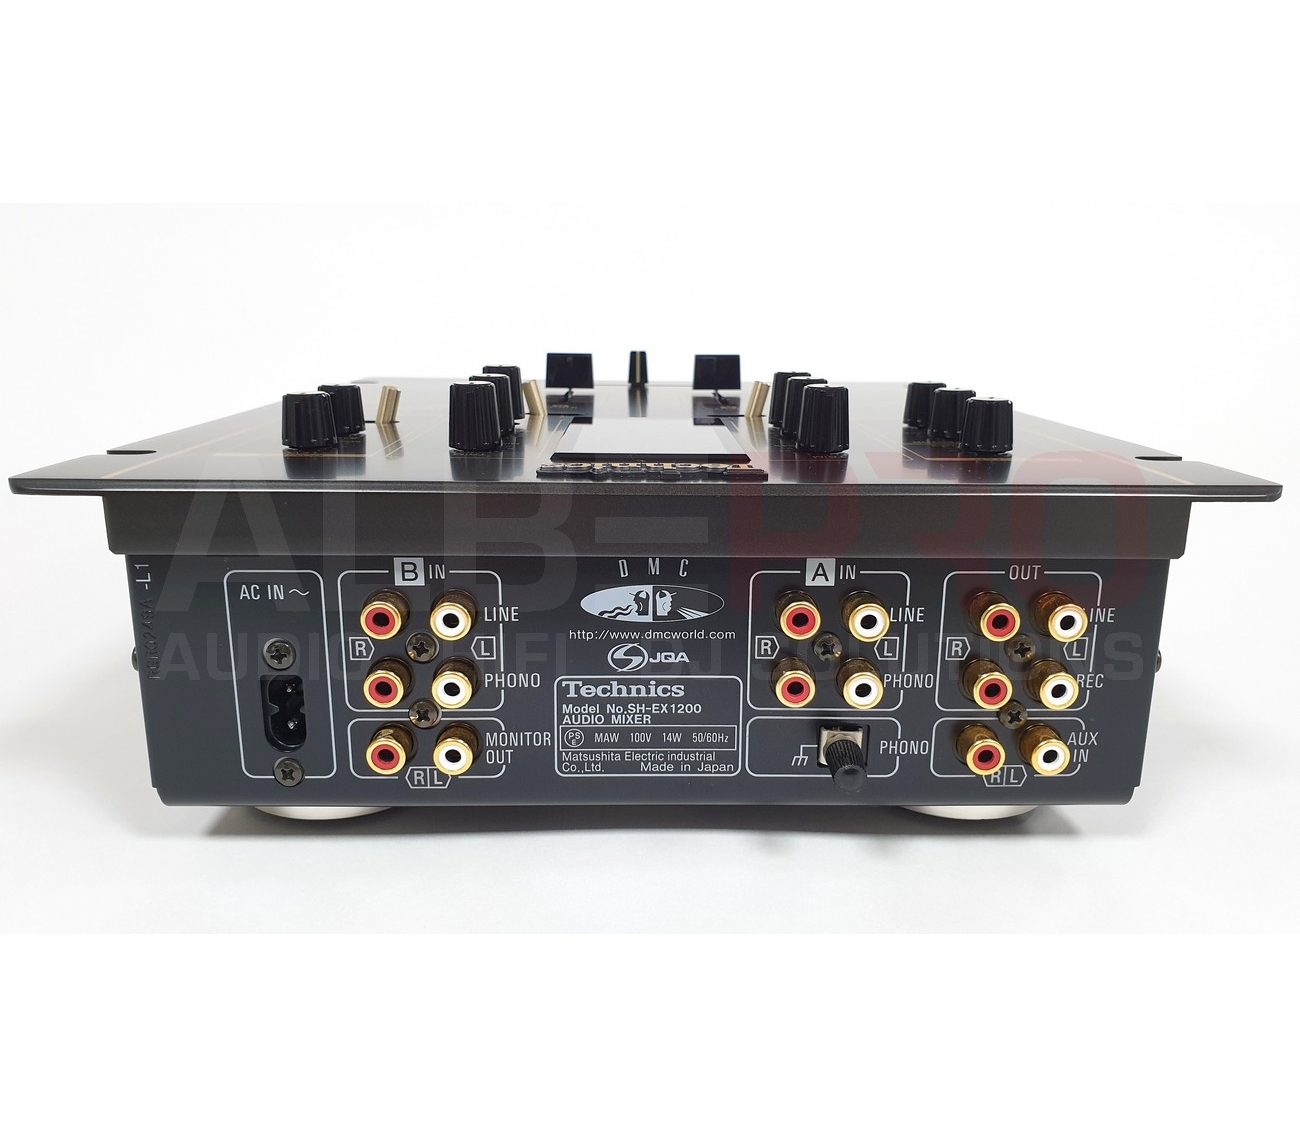 Technics SH-EX1200 the Official World DJ Championship Mixer